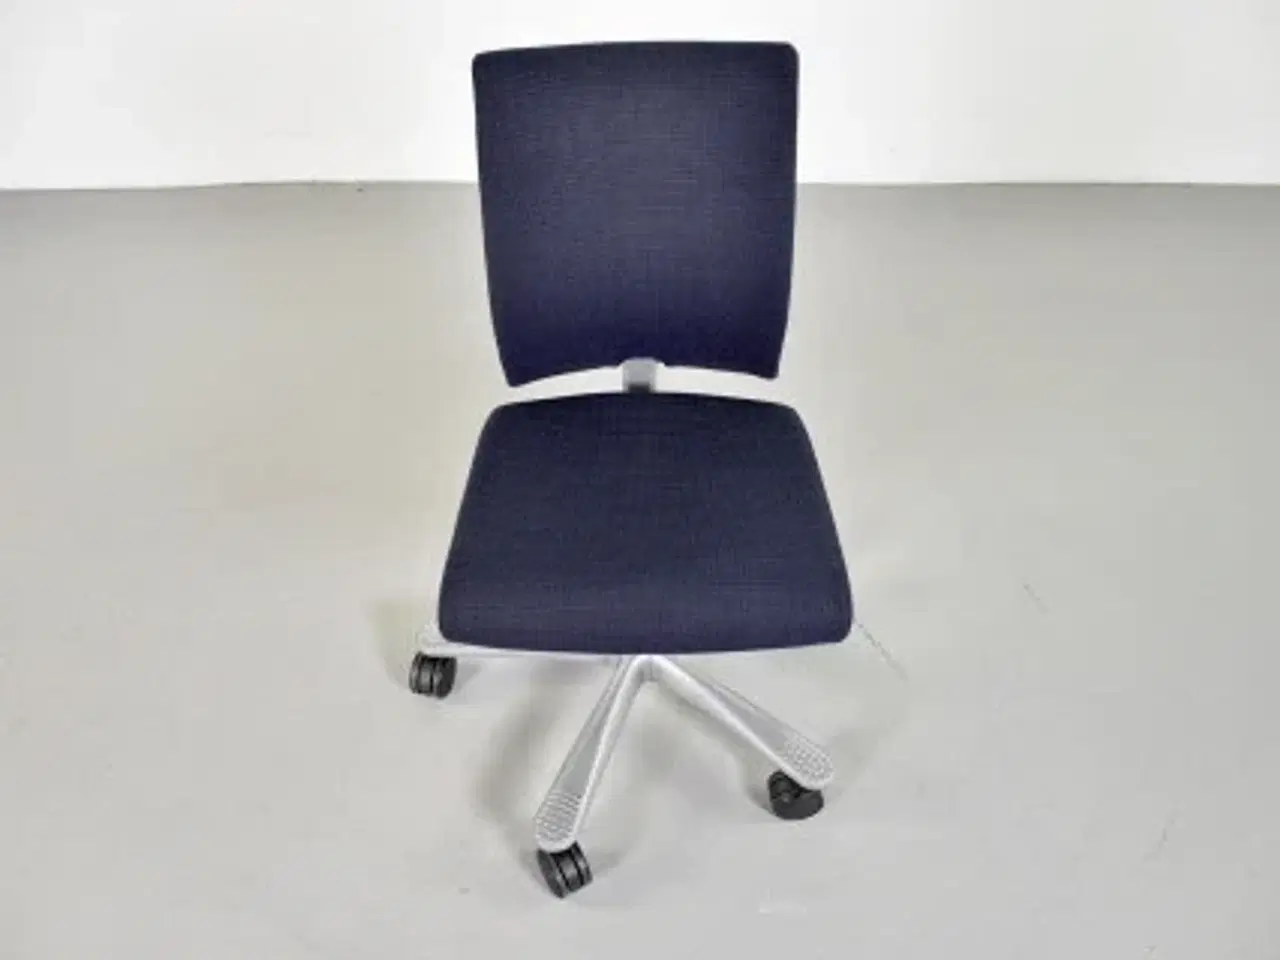 Billede 5 - Häg h04 kontorstol med sort/blå polster og alugråt stel